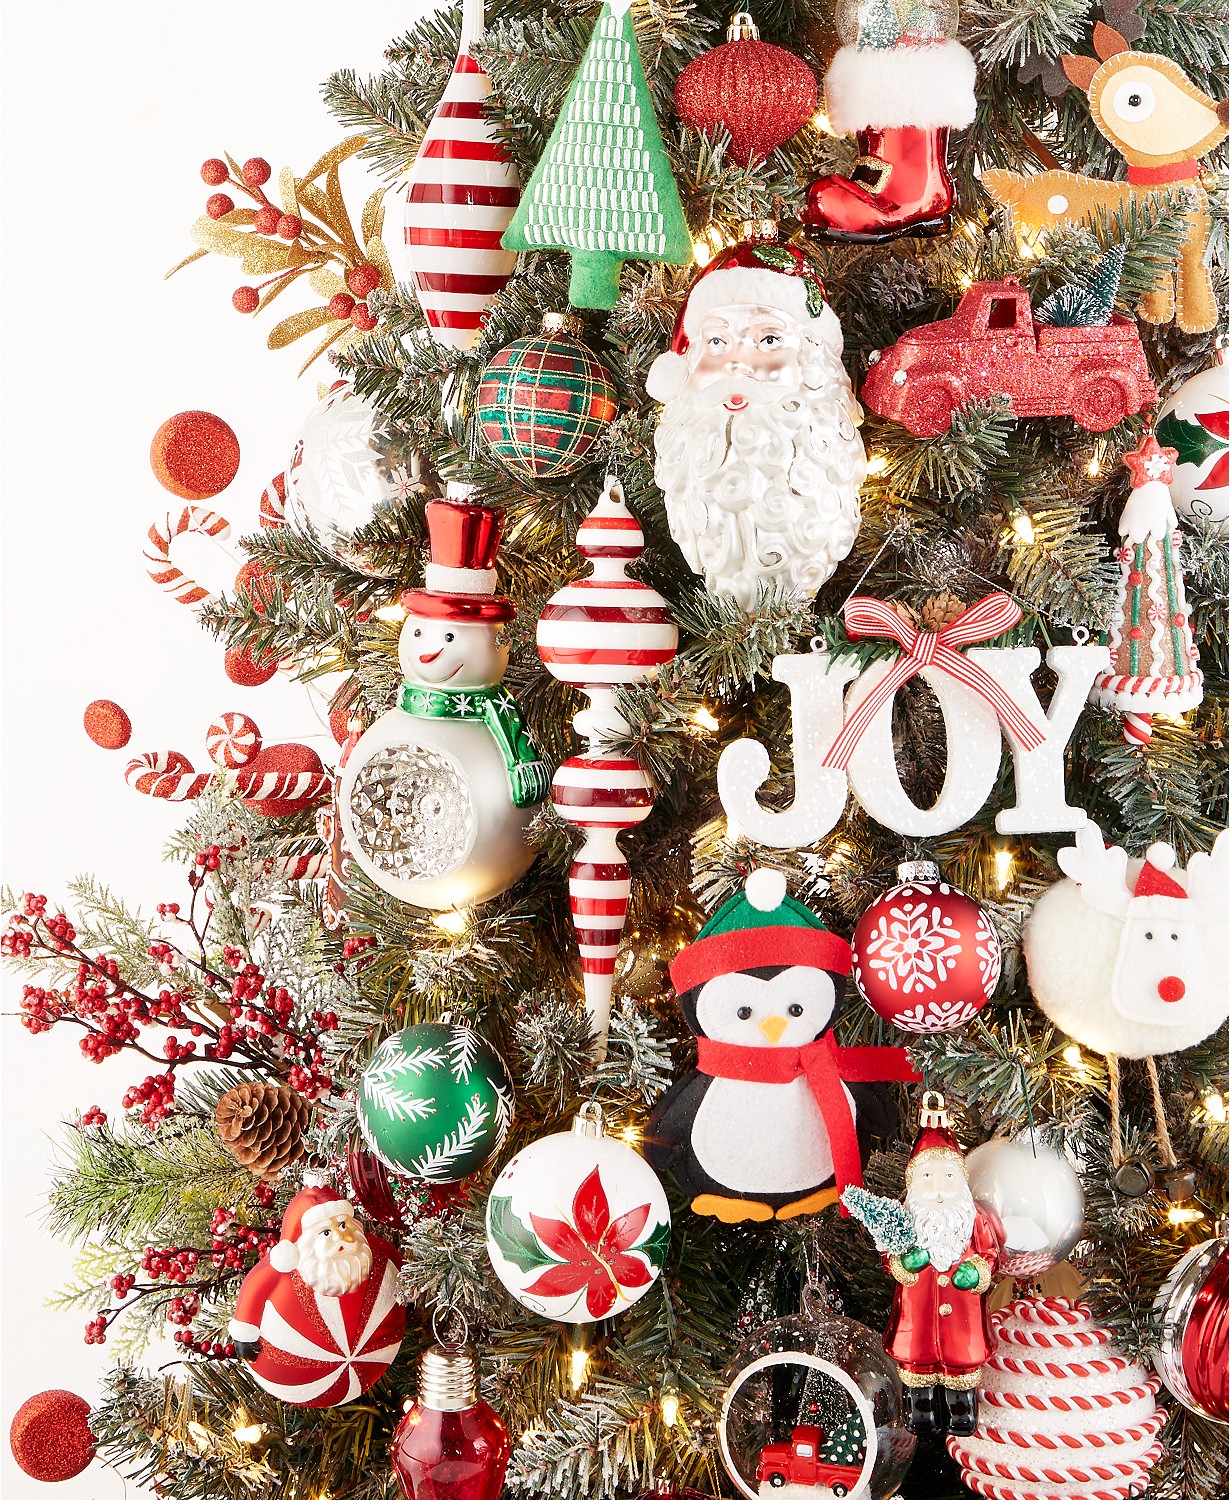 Kailya Glittered Christmas Tree Topper Star Baubles Christmas Tree Decorations Gift Bauble Christmas Ornament #1